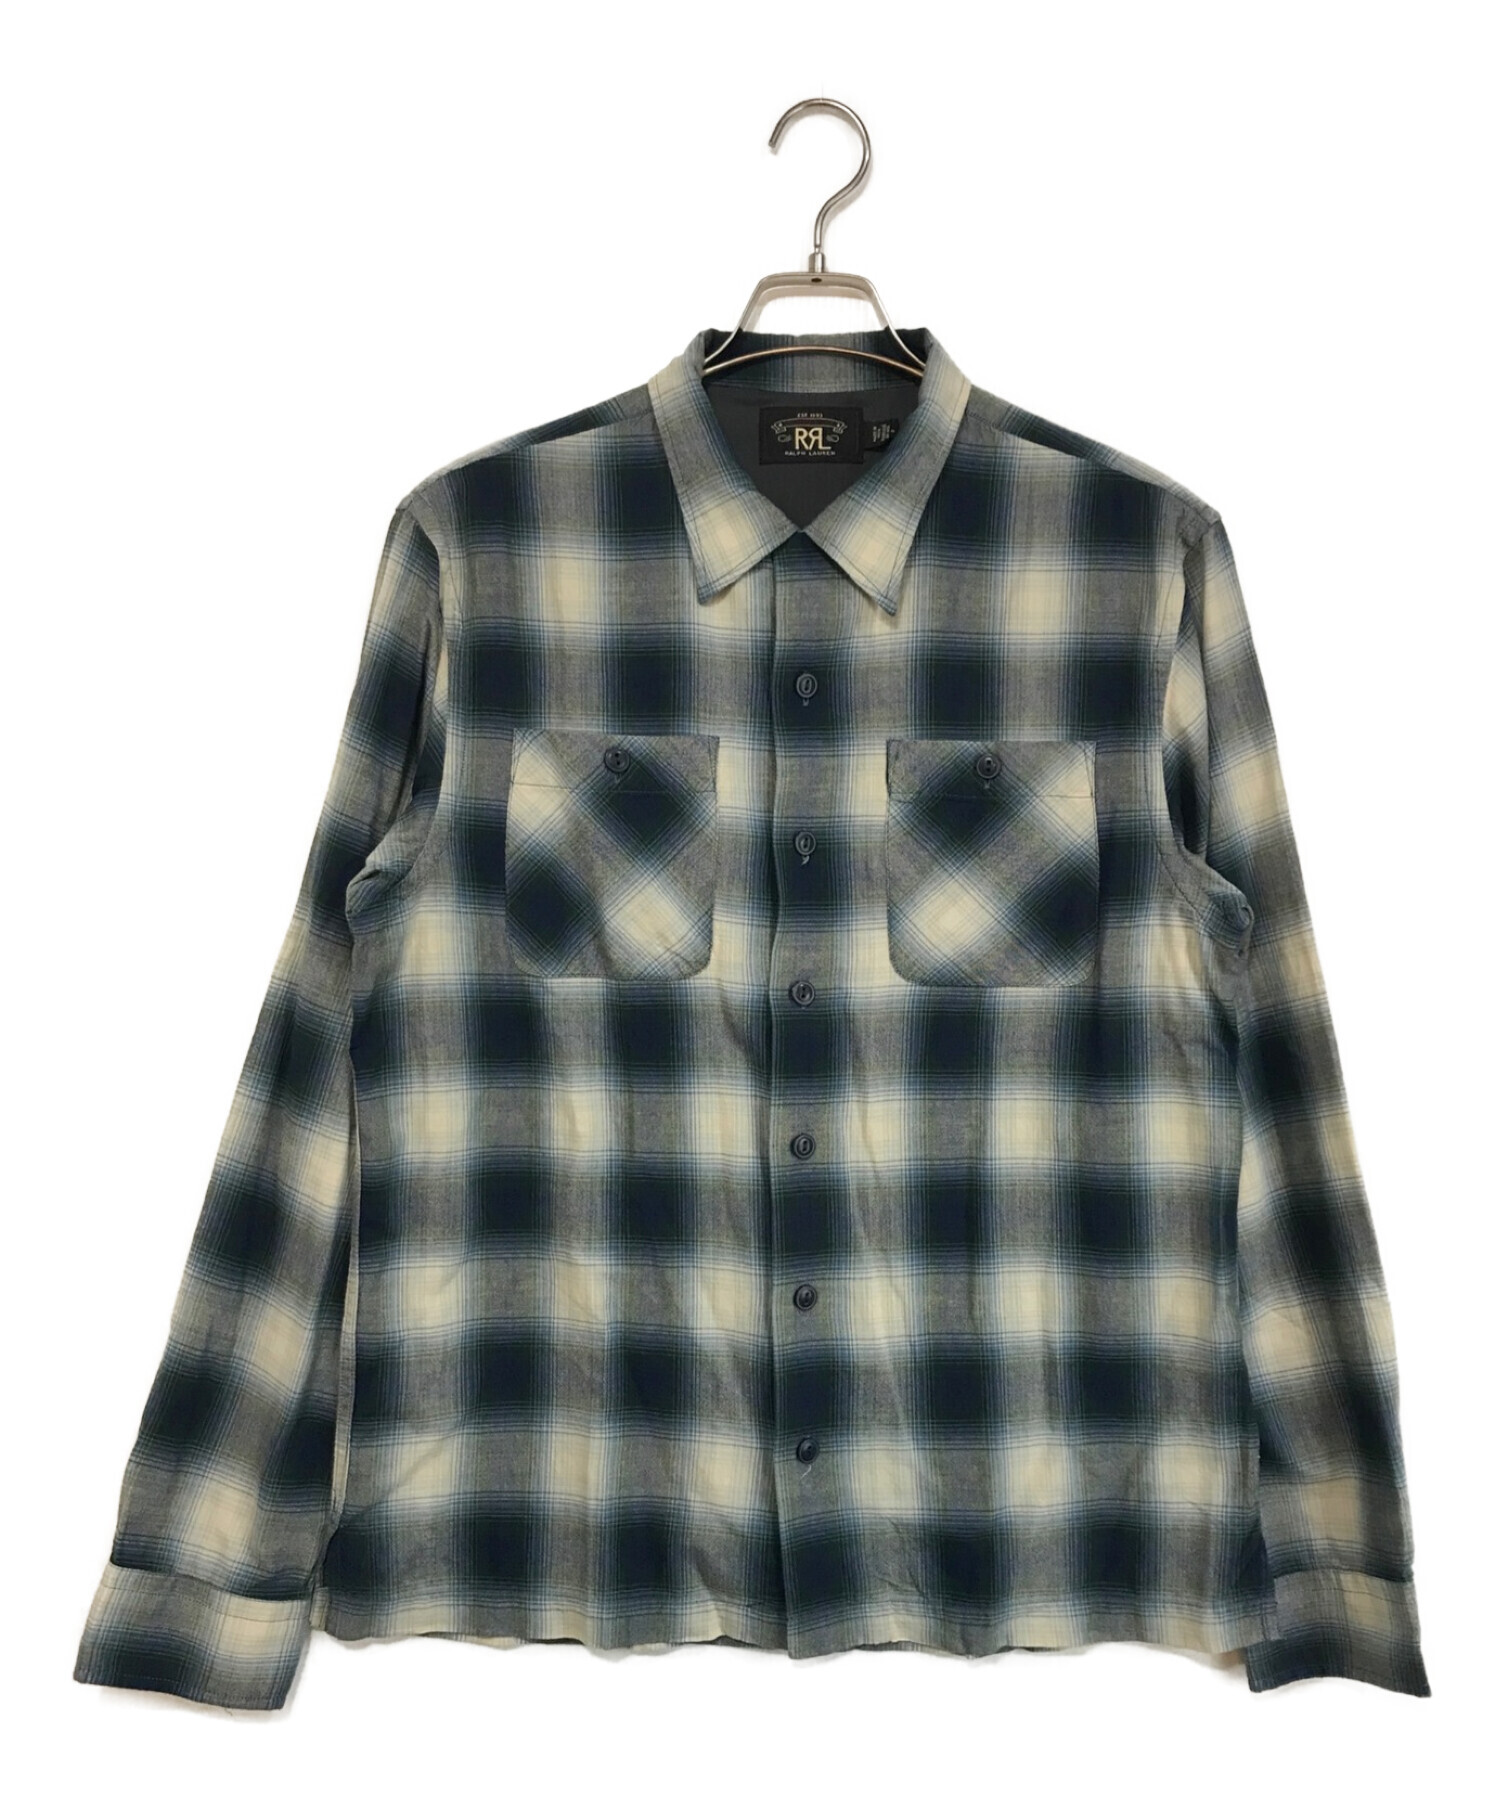 2020最新型 高品質 kinema ombre zip shirt キネマ オンブレジップ 